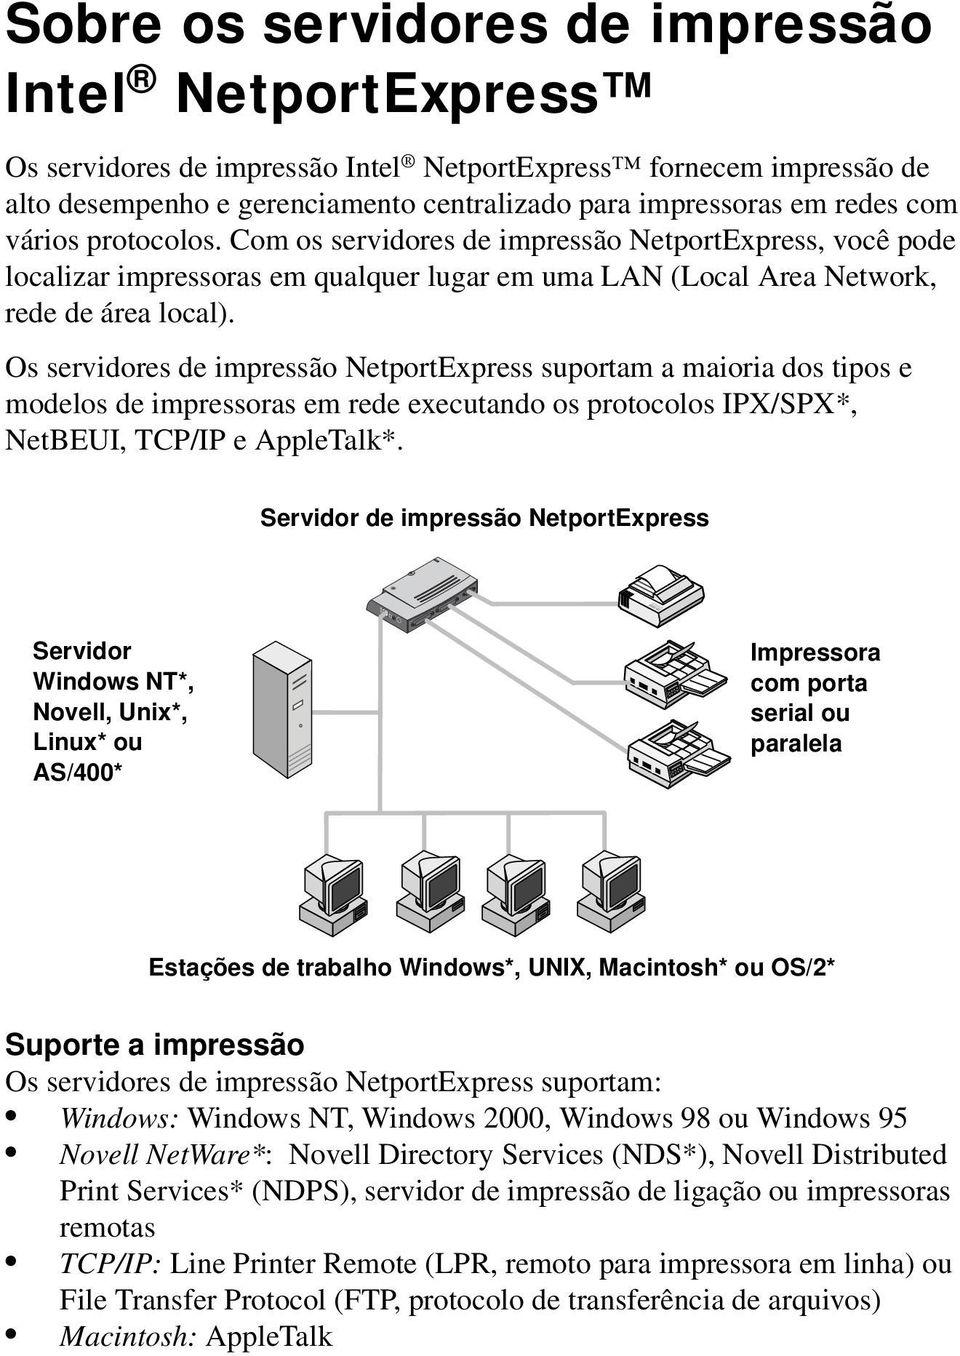 Os servidores de impressão NetportExpress suportam a maioria dos tipos e modelos de impressoras em rede executando os protocolos IPX/SPX*, NetBEUI, TCP/IP e AppleTalk*.